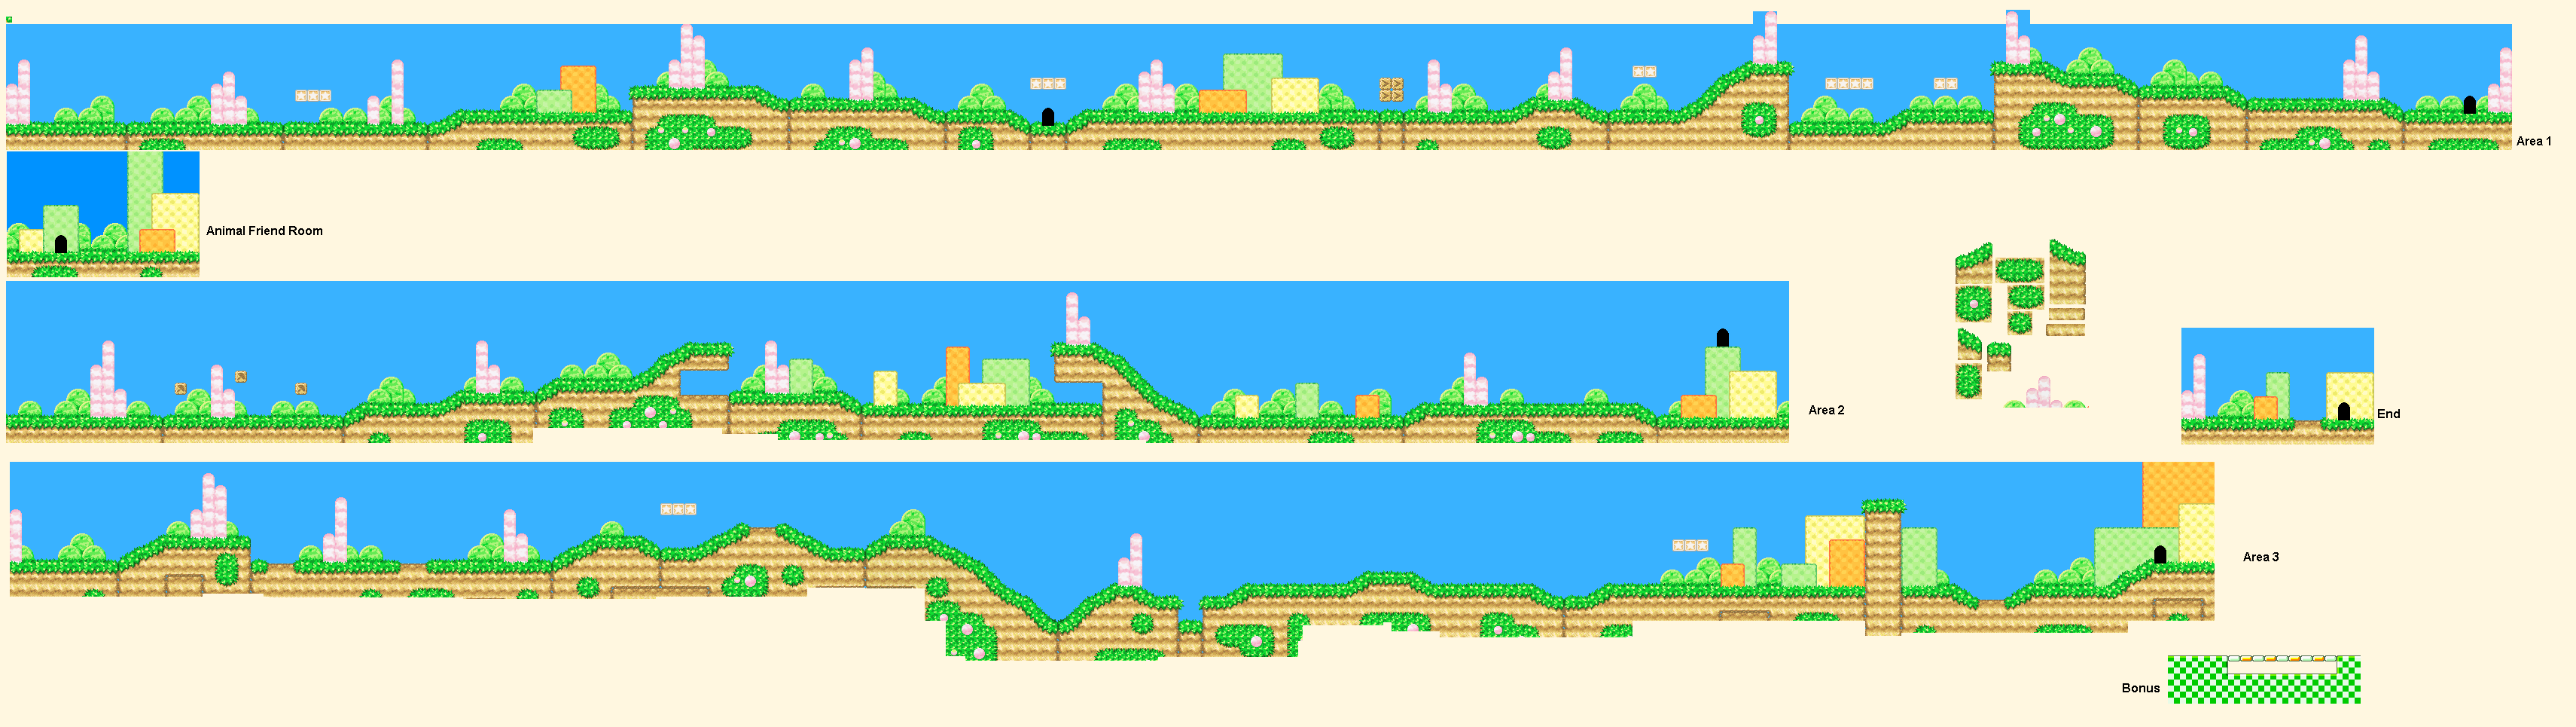 Kirby's Dream Land 3 - Grass Land 1